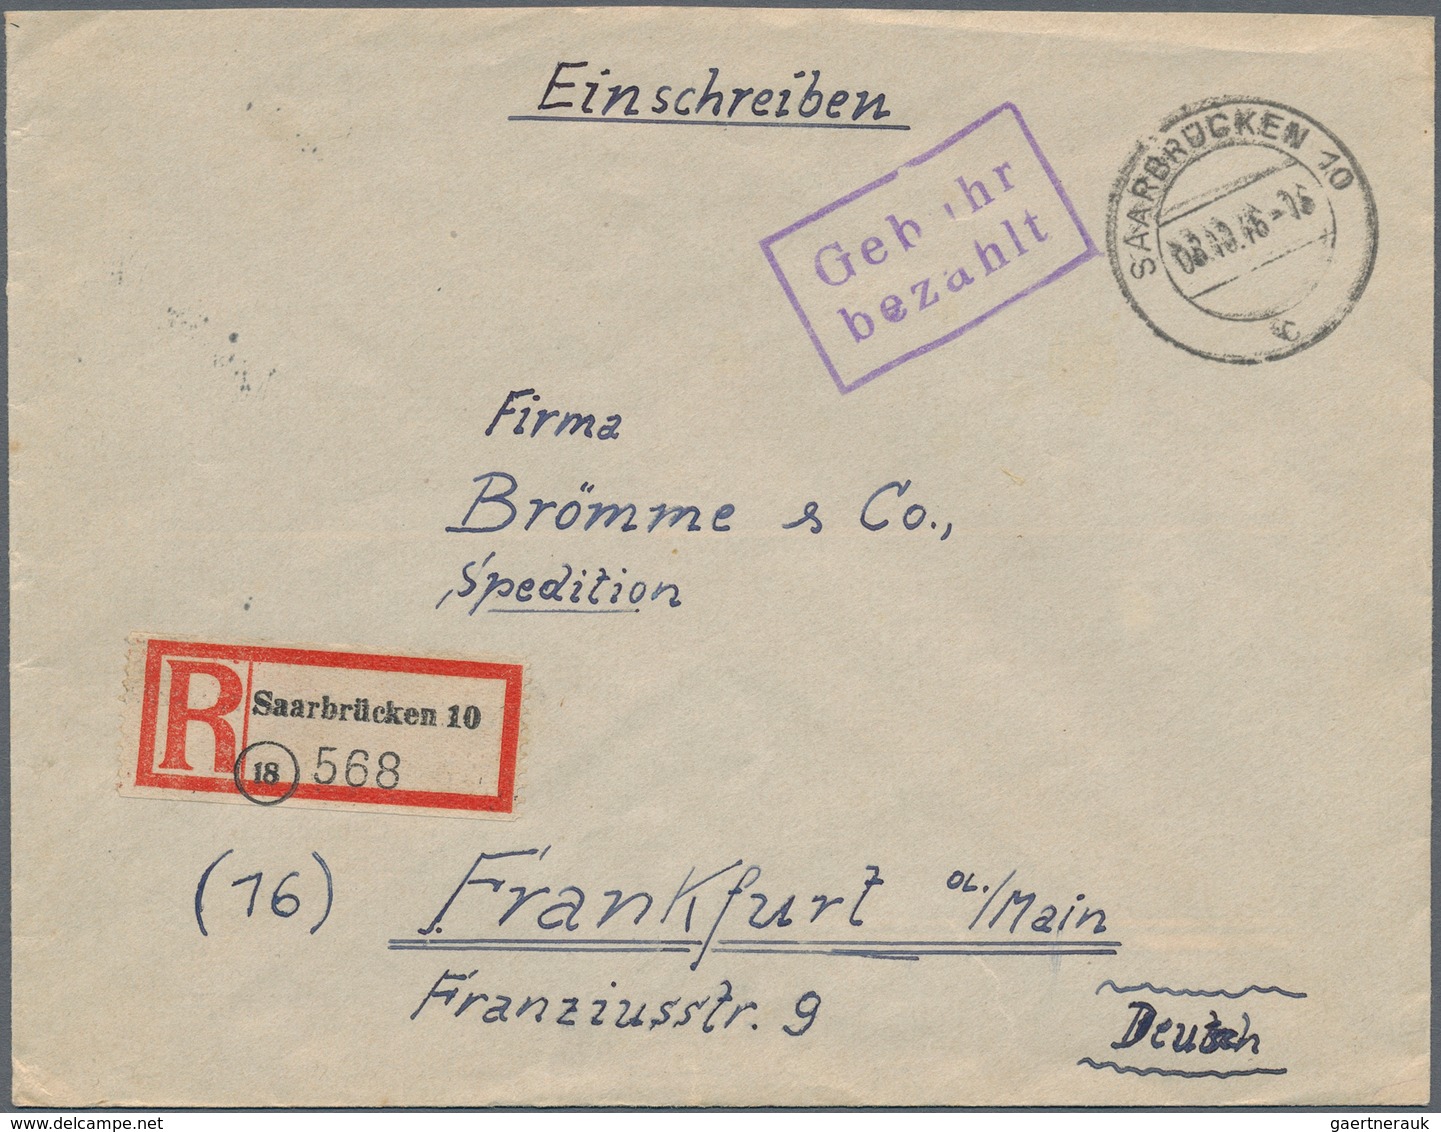 Alliierte Besetzung - Gebühr Bezahlt: 1945/1953, umfangreiche Stempel- und Spezial-Sammlung mit gesc